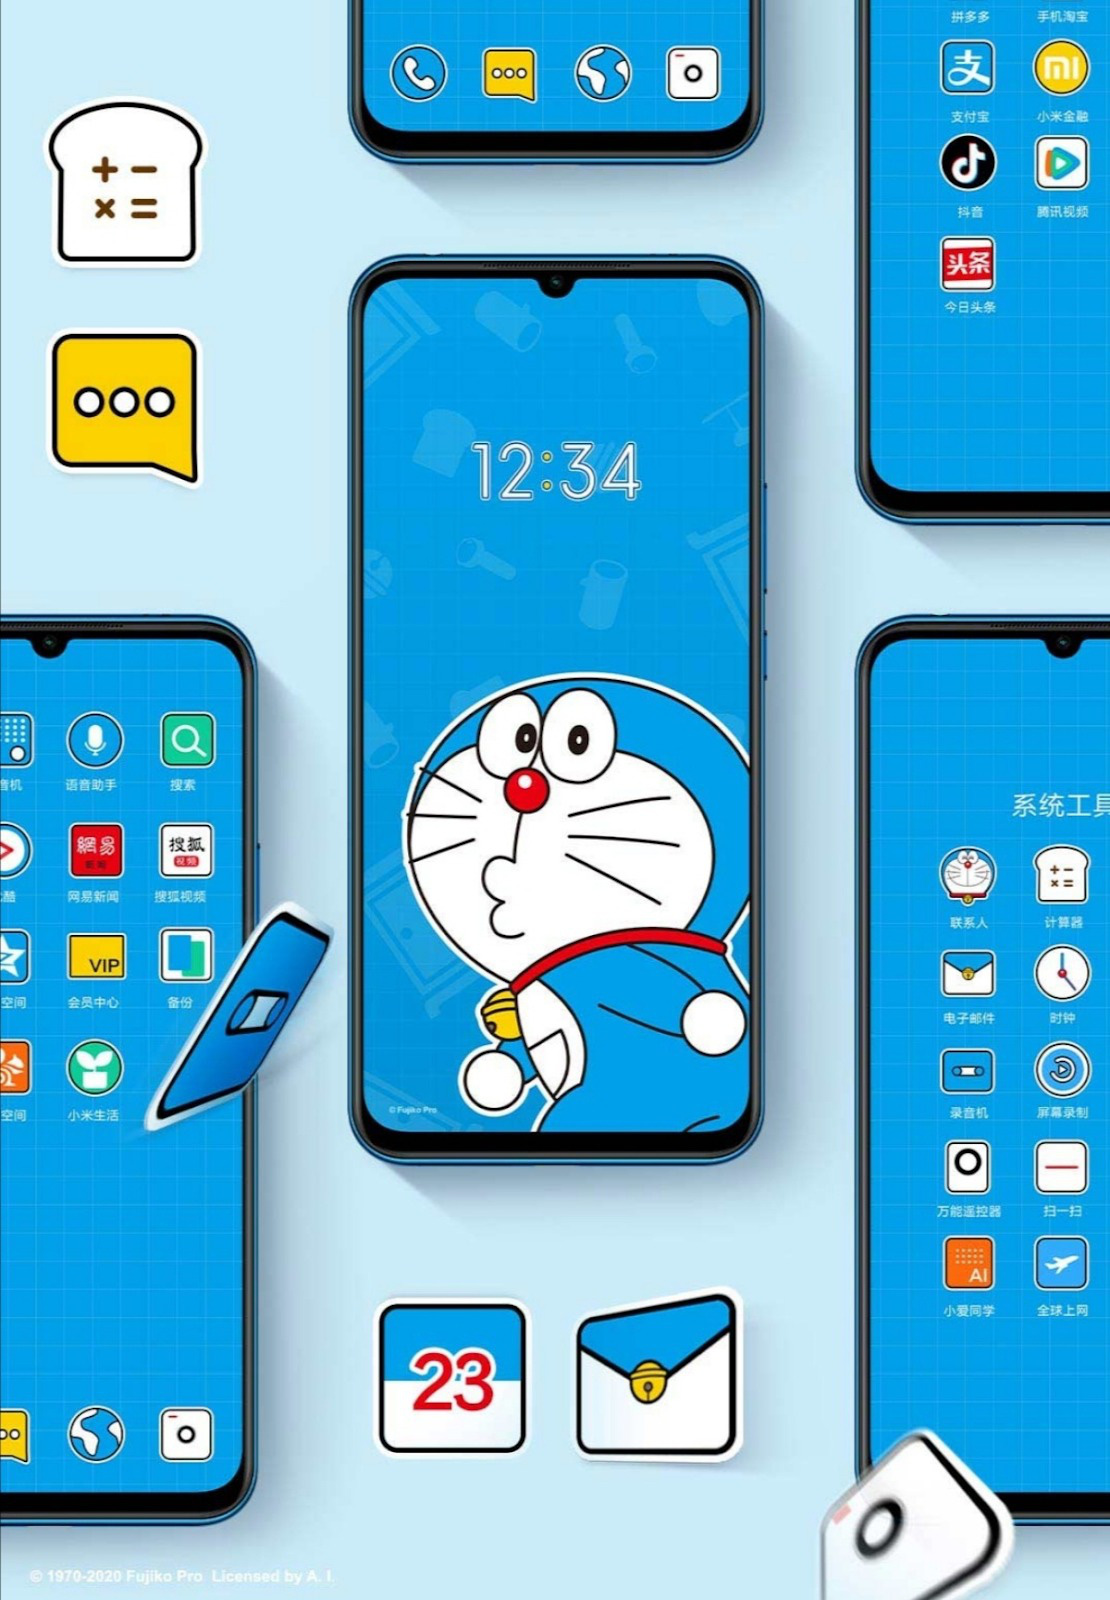 Chỉ cần nhìn qua điện thoại mèo ú Doraemon, bạn sẽ cảm thấy một khoảnh khắc thư giãn và bình yên. Với hình dáng thật dễ thương và thân thiện, chú mèo máy này sẽ trở thành người bạn đồng hành đáng tin cậy cho bạn.